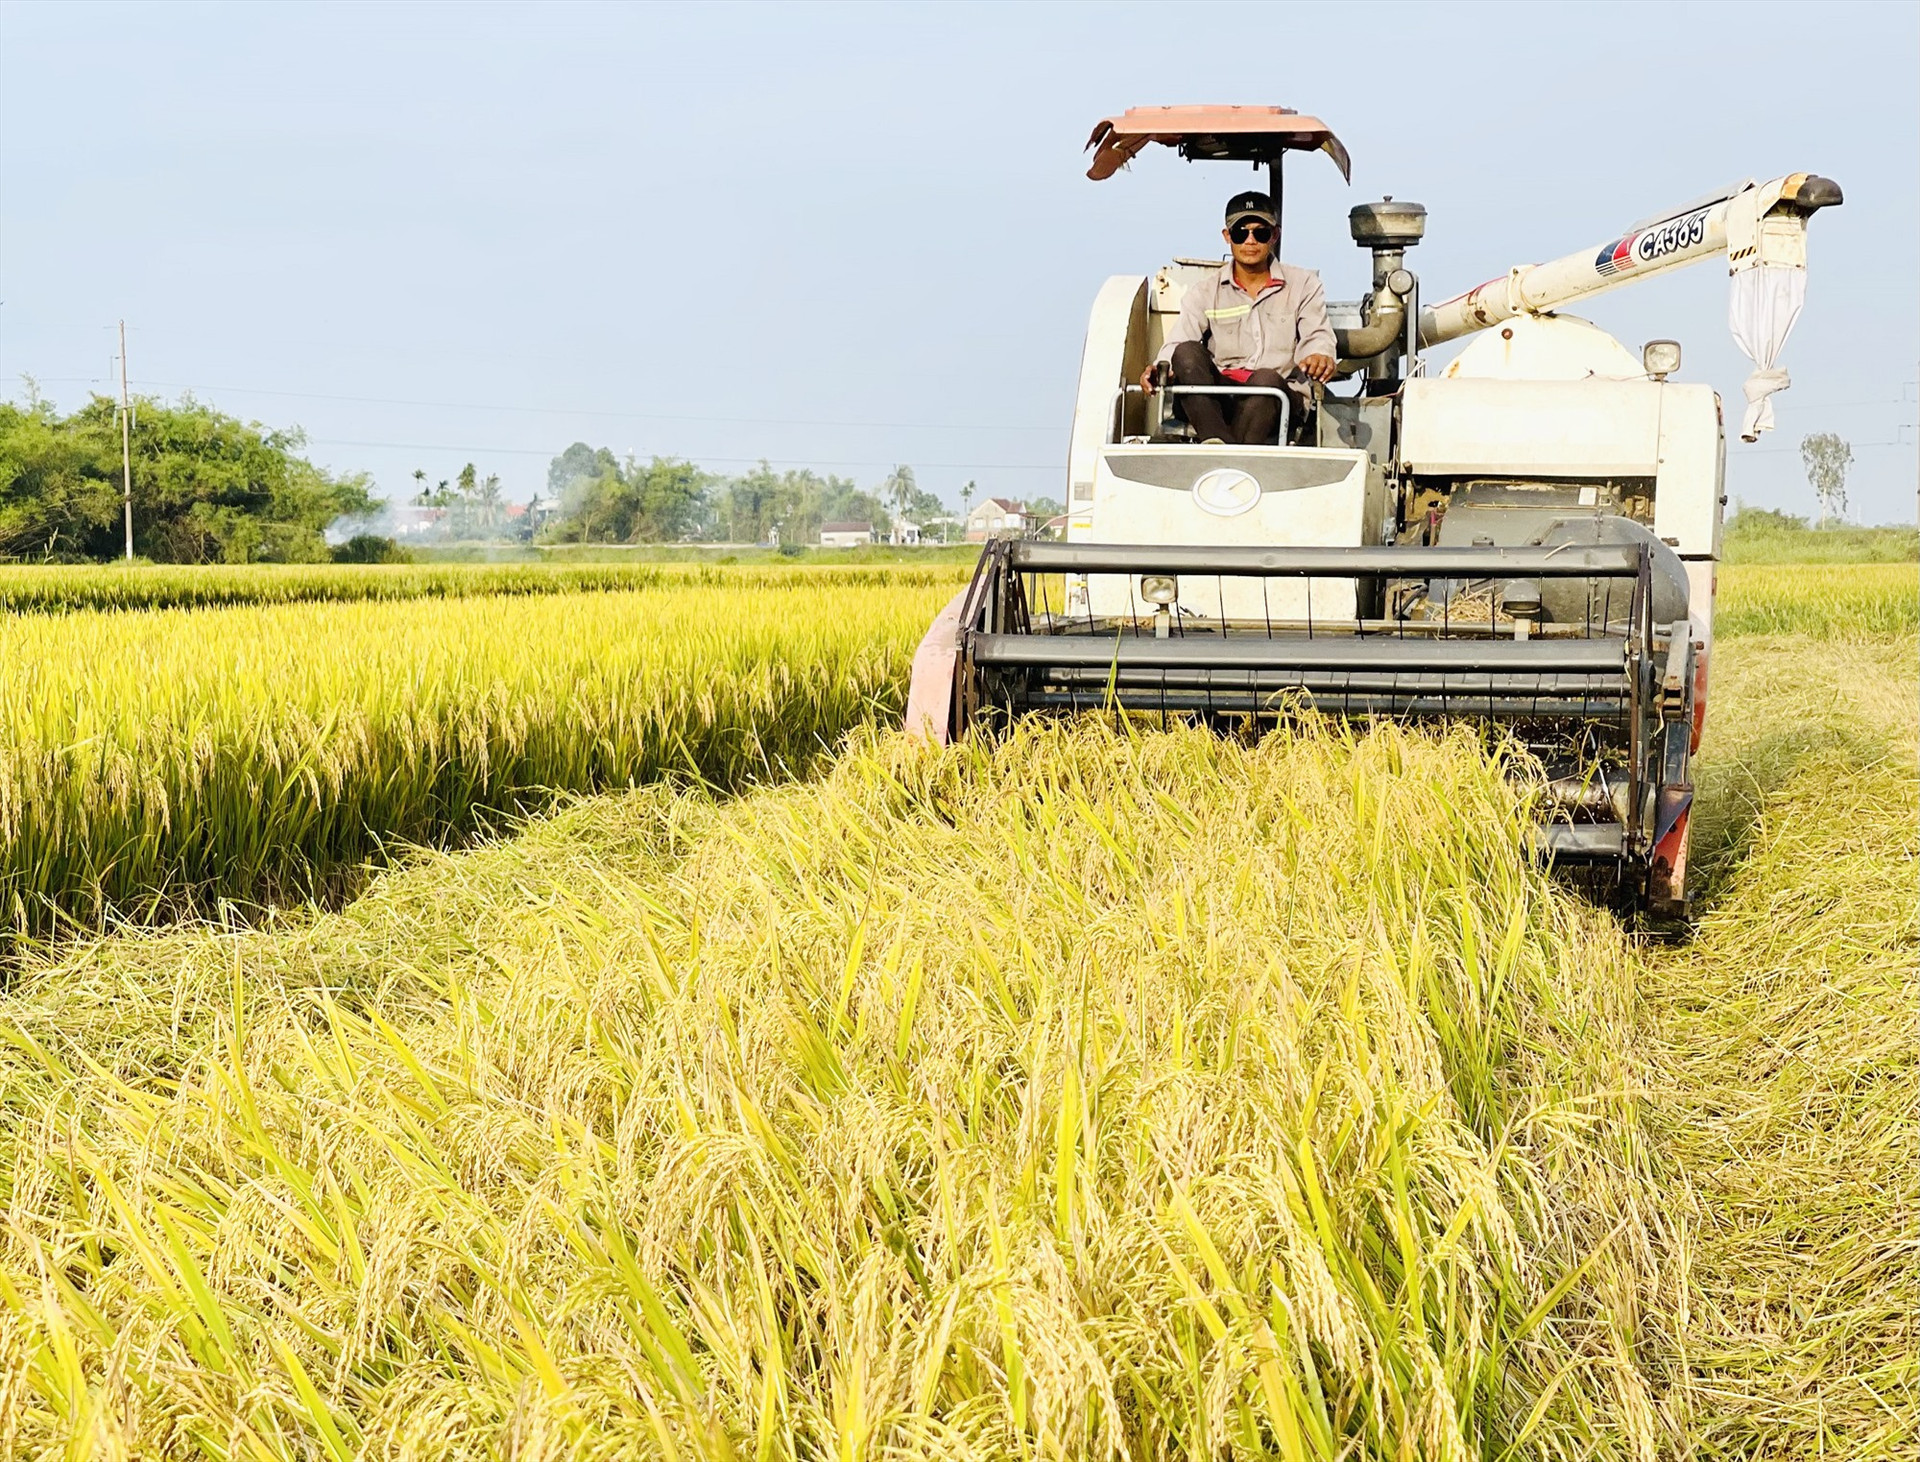 Đông xuân năm nay, năng suất lúa bình quân của huyện Duy Xuyên ước đạt 66,5 tạ/ha, tăng 8,6 tạ/ha so với cùng vụ sản xuất năm ngoái. Ảnh: PV